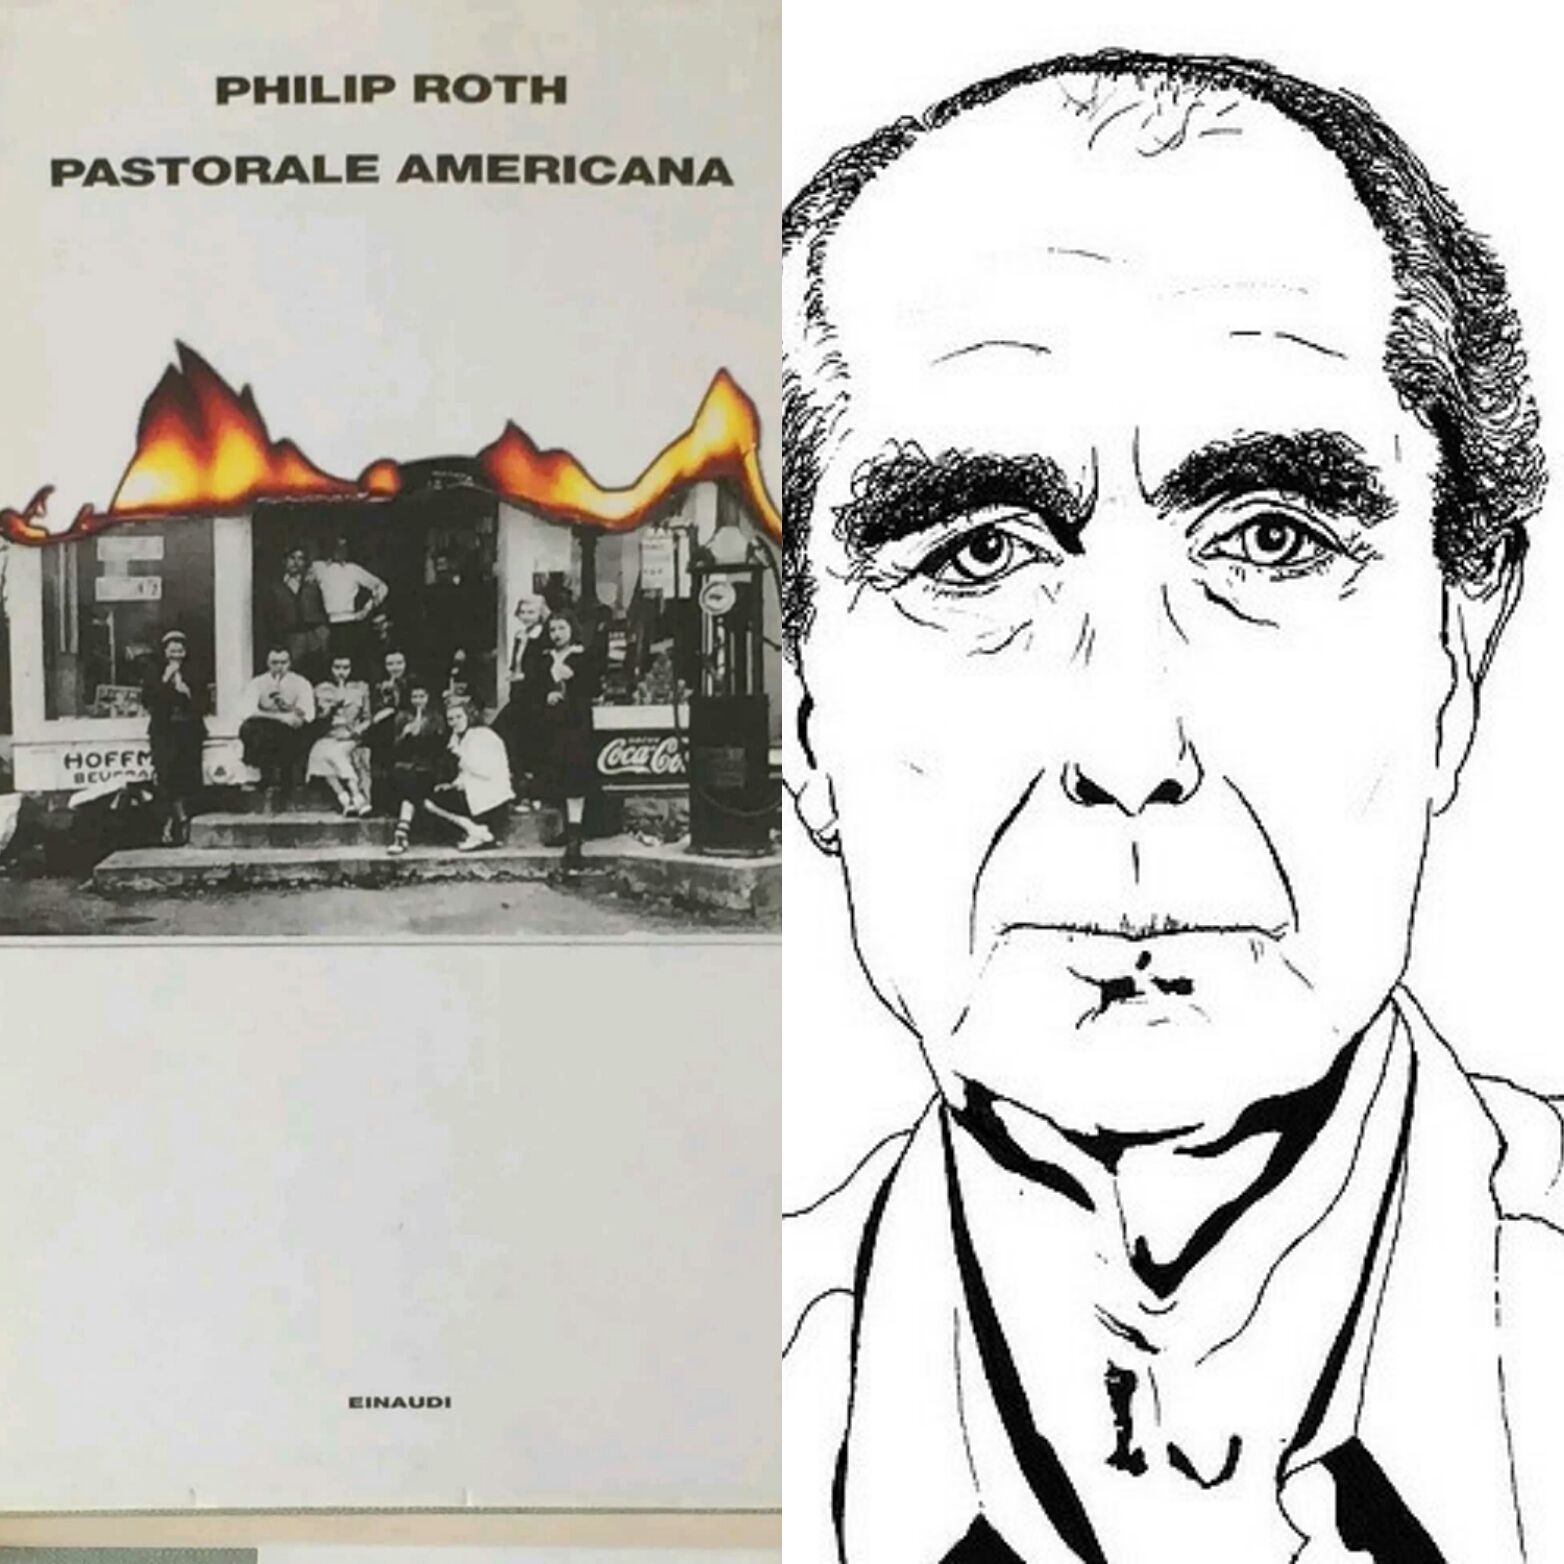 È scomparso Philip Roth: “Pastorale americana” presto alle stelle!